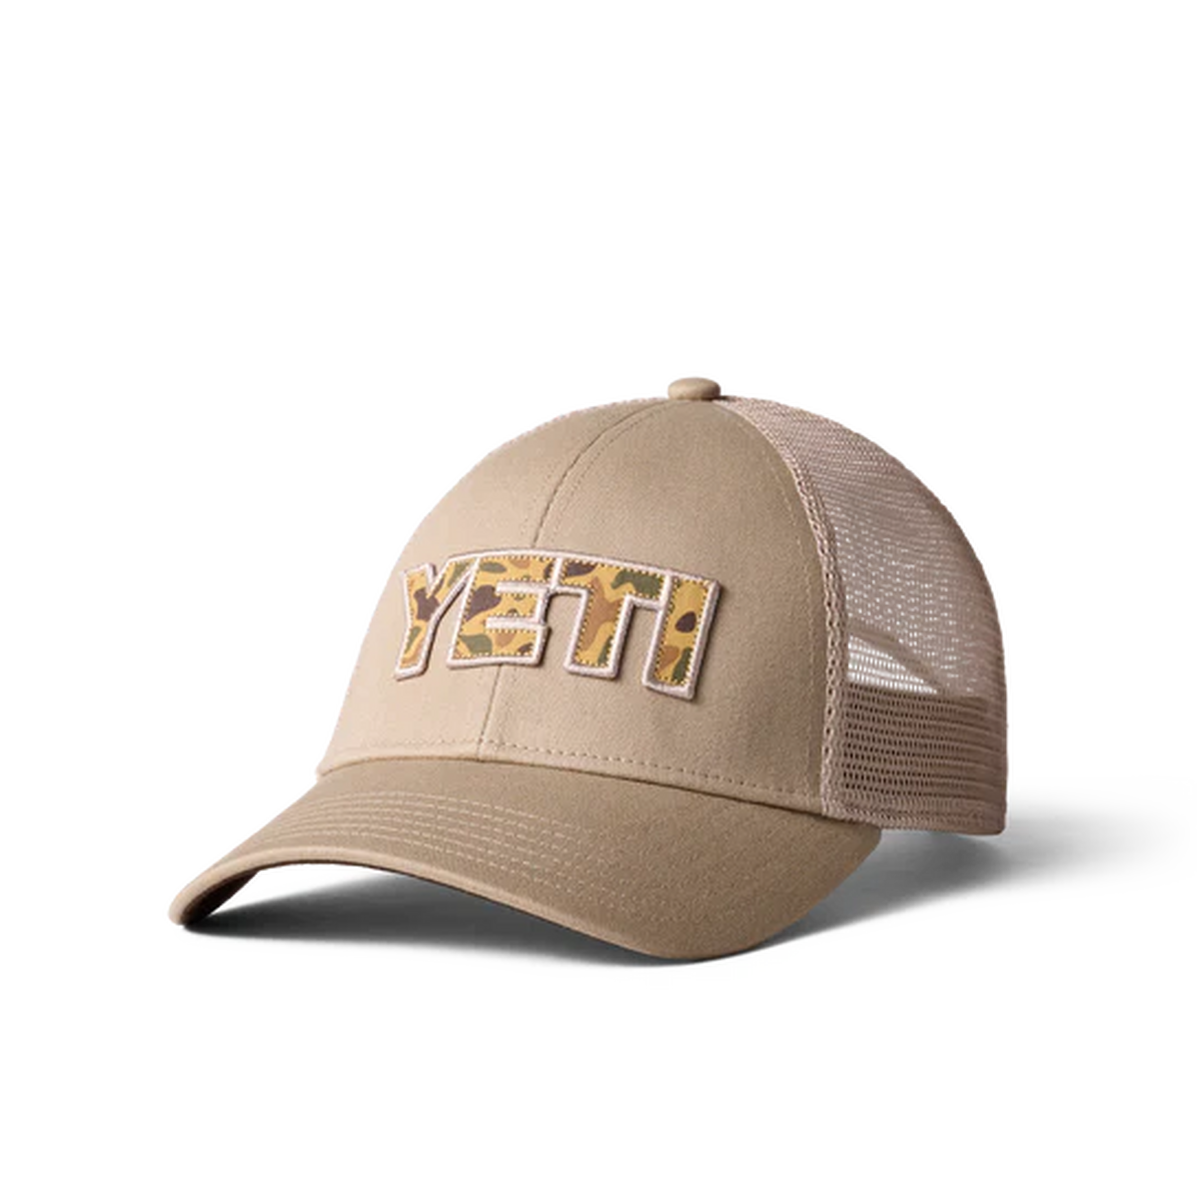 Yeti Men's Camo Logo Badge Trucker Hat - Khaki